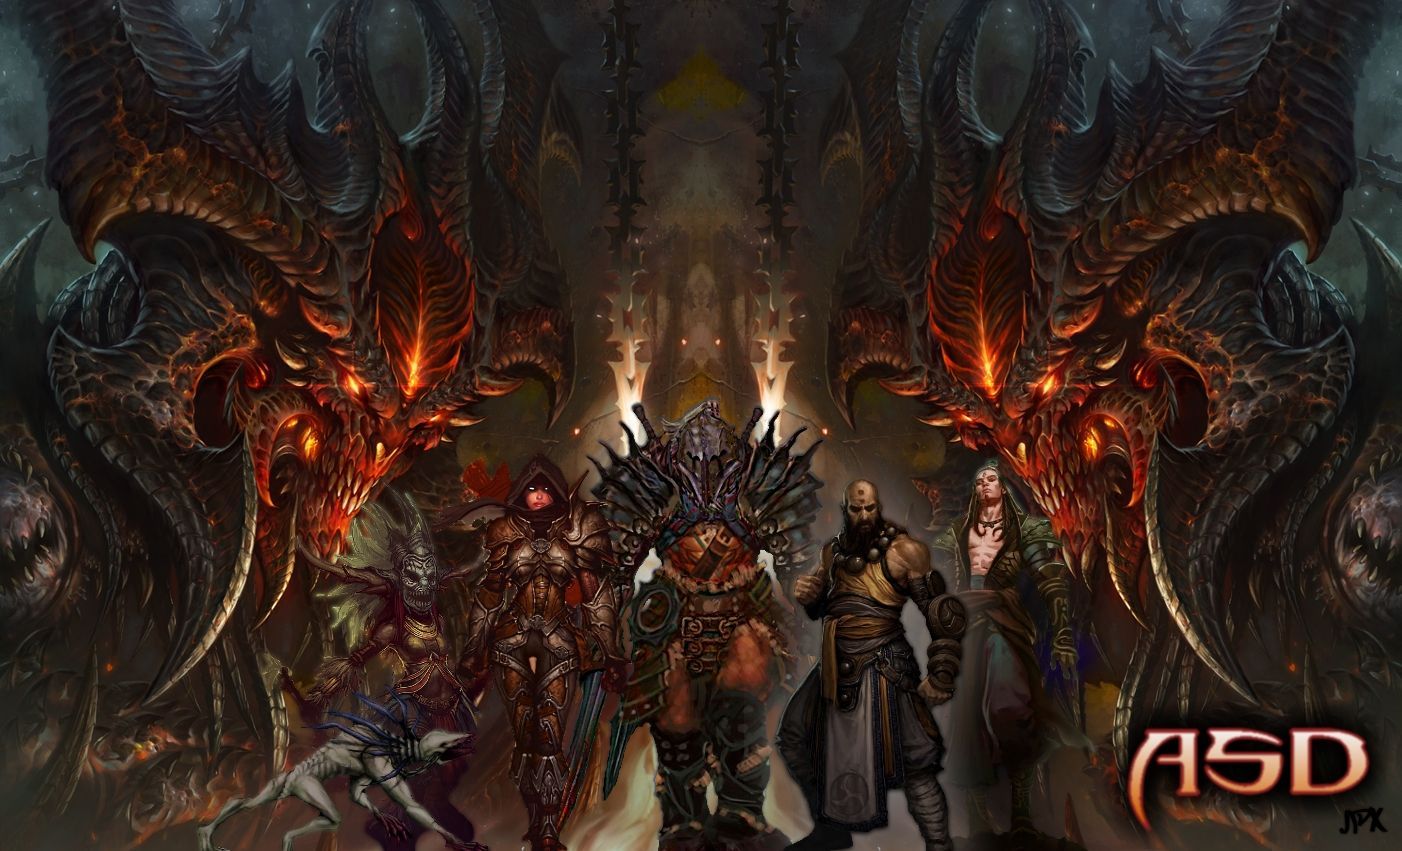 Members Gallery - Diablo 3 Wallpapers - Diablo Fans